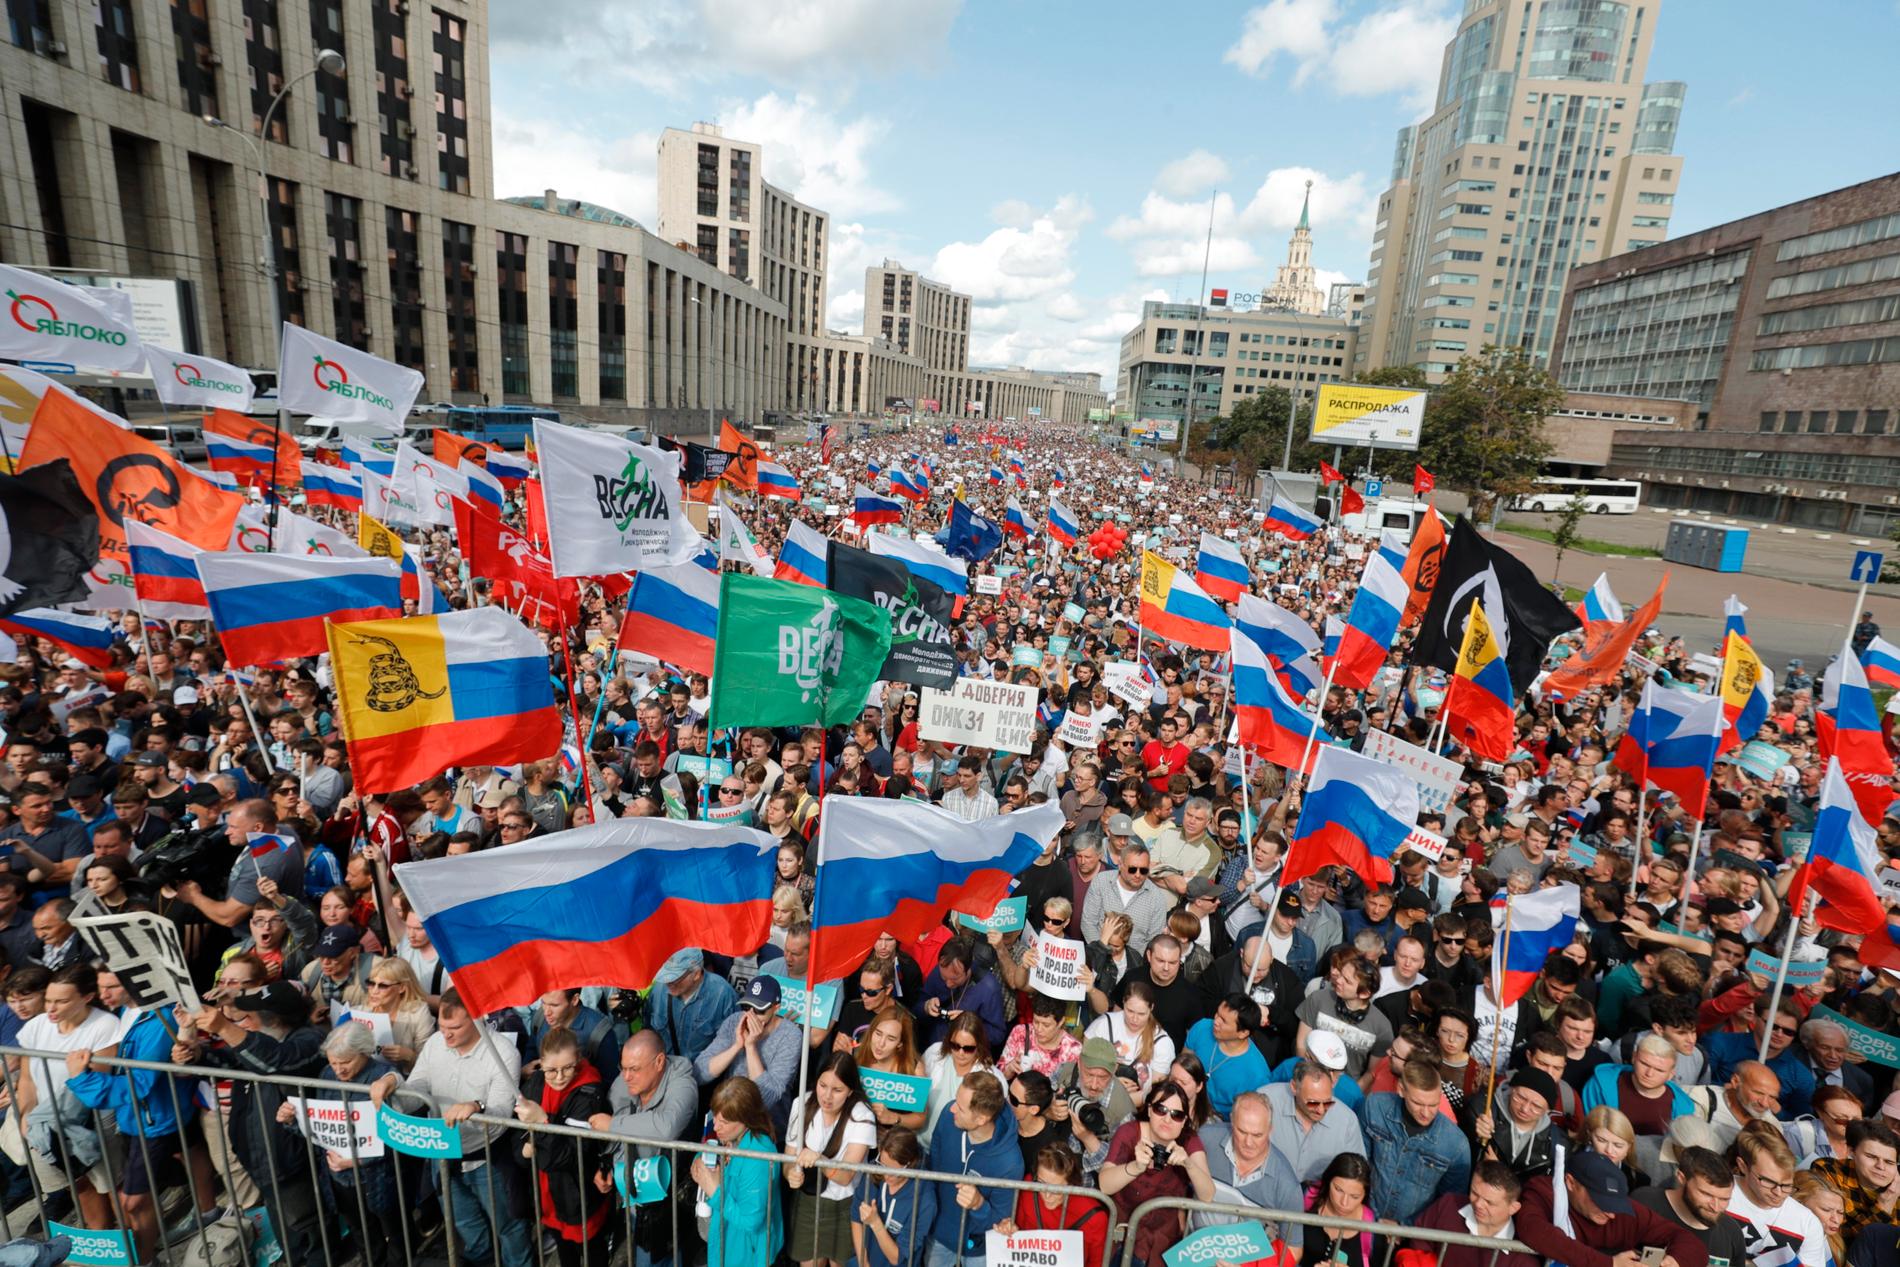 Fler än 20 000 personer, inklusive framträdande oppositionspolitiker, samlades under lördagen i en manifestation i centrala Moskva för att kräva fria och rättvisa lokalval.